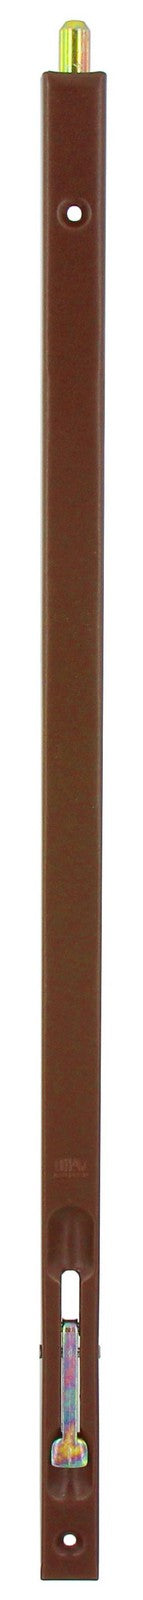 20pz catenaccio incasso bronzato 160 mm cod:ferx.7261